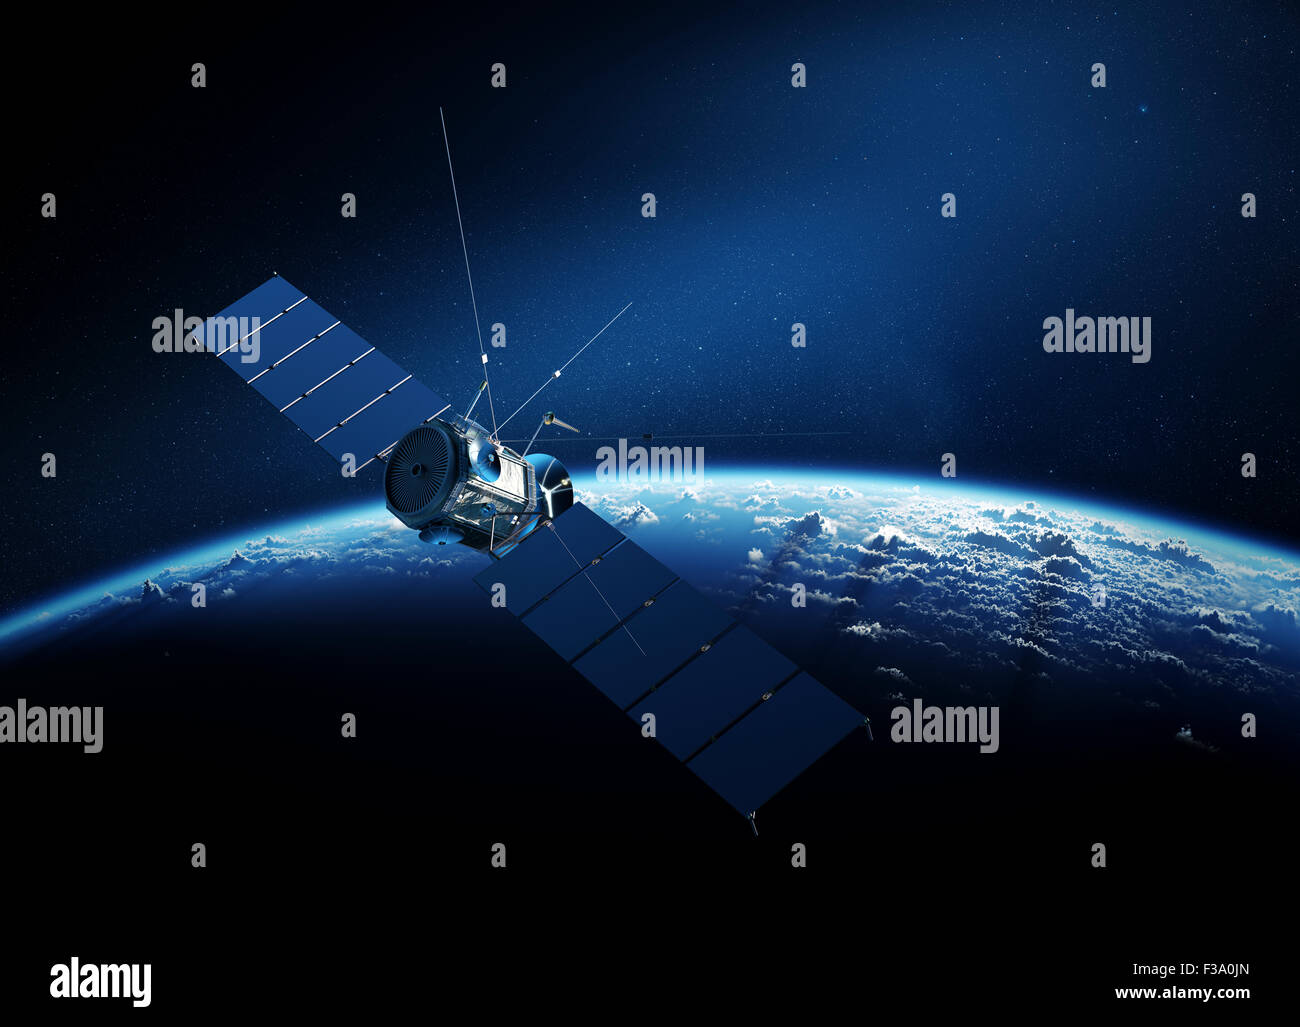 Kommunikationssatelliten, die Erde umkreisen, mit Sonnenaufgang im Raum Stockfoto